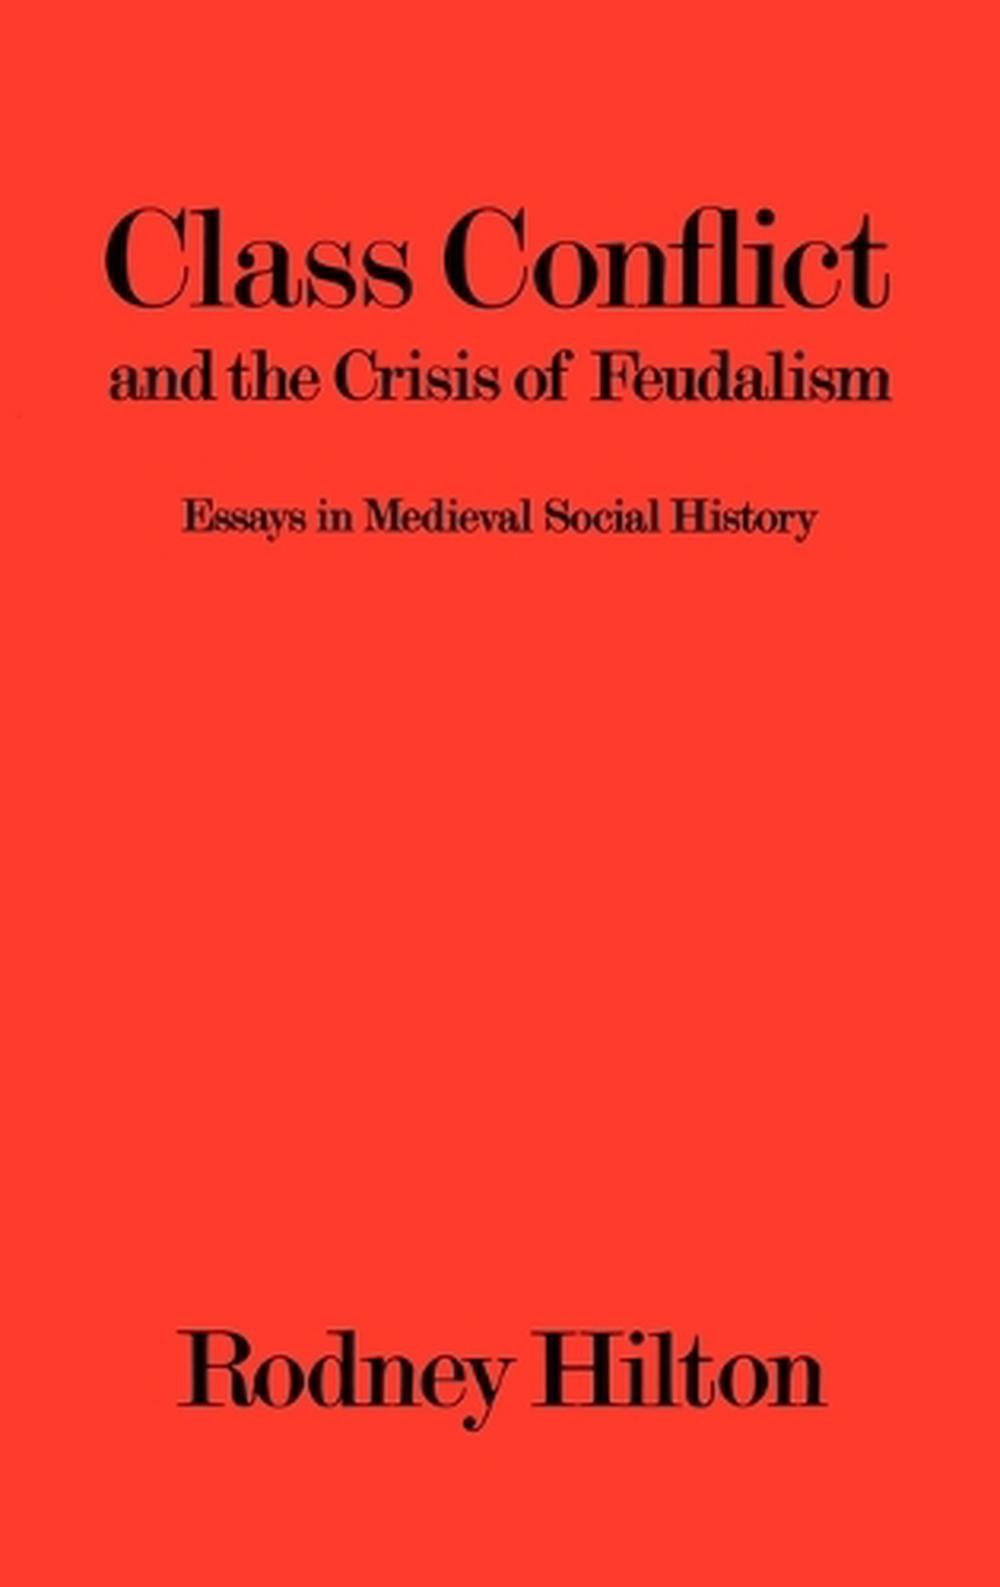 Essay on feudalism